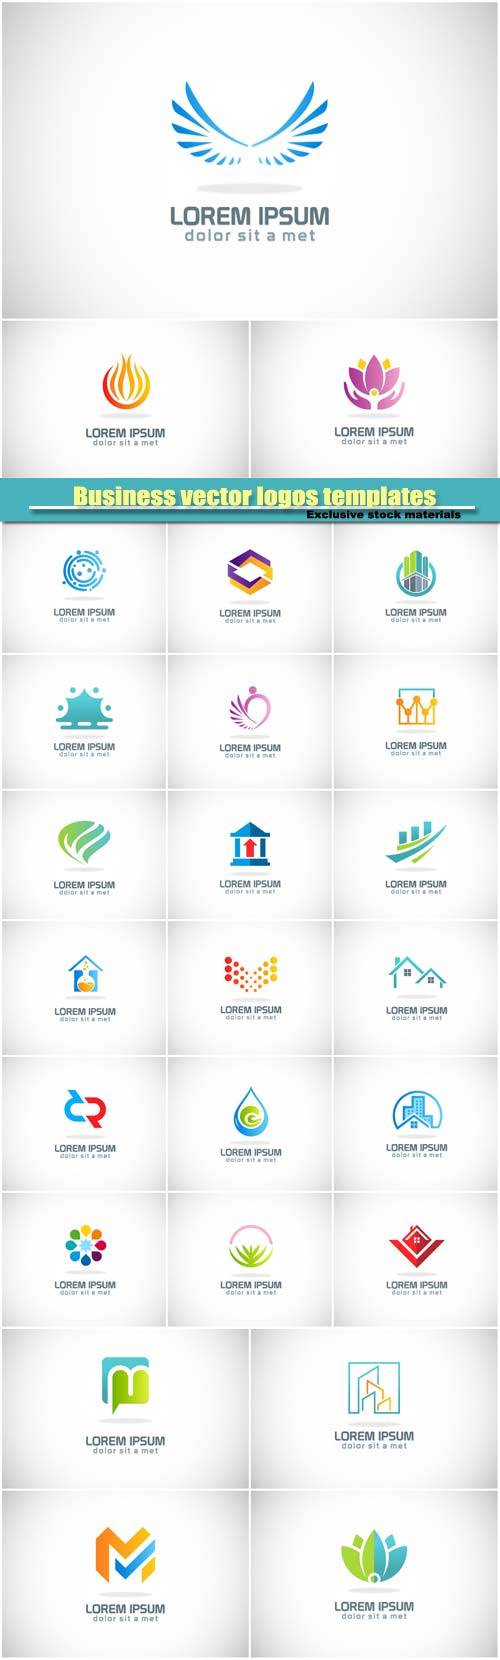 Business vector logos templates, creative figure icon #4